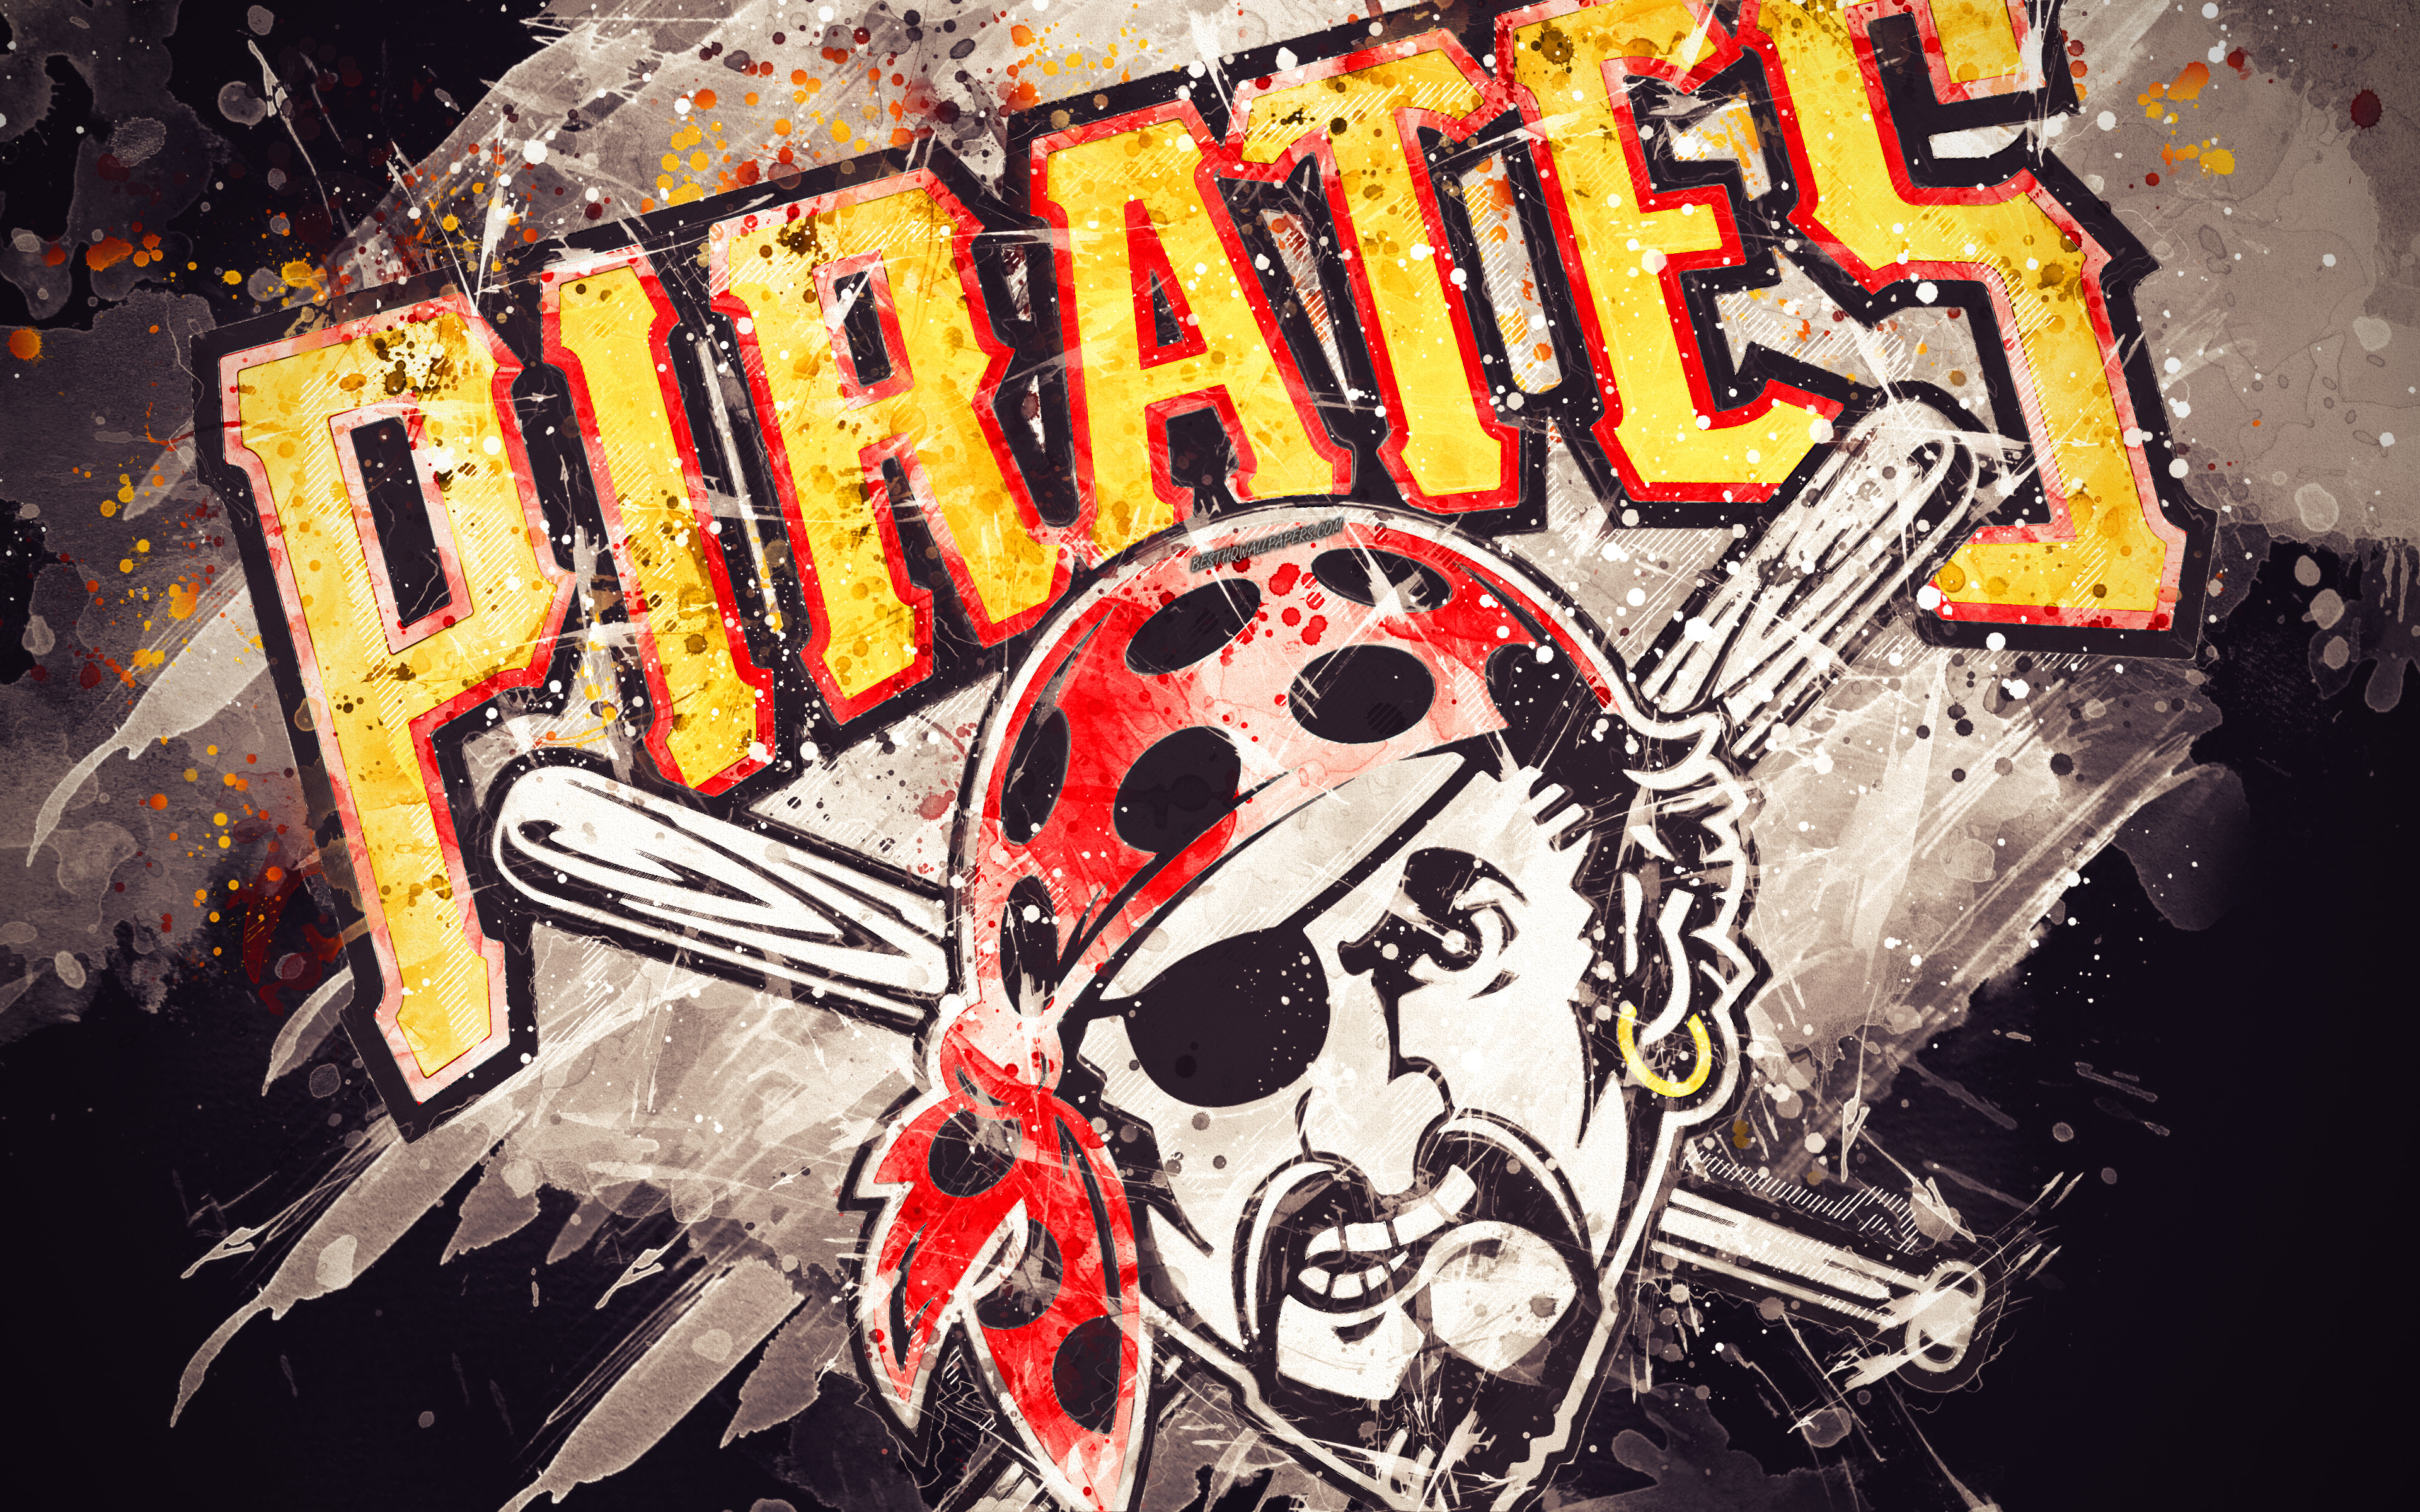 Download wallpapers Pittsburgh Pirates 4k grunge art logo